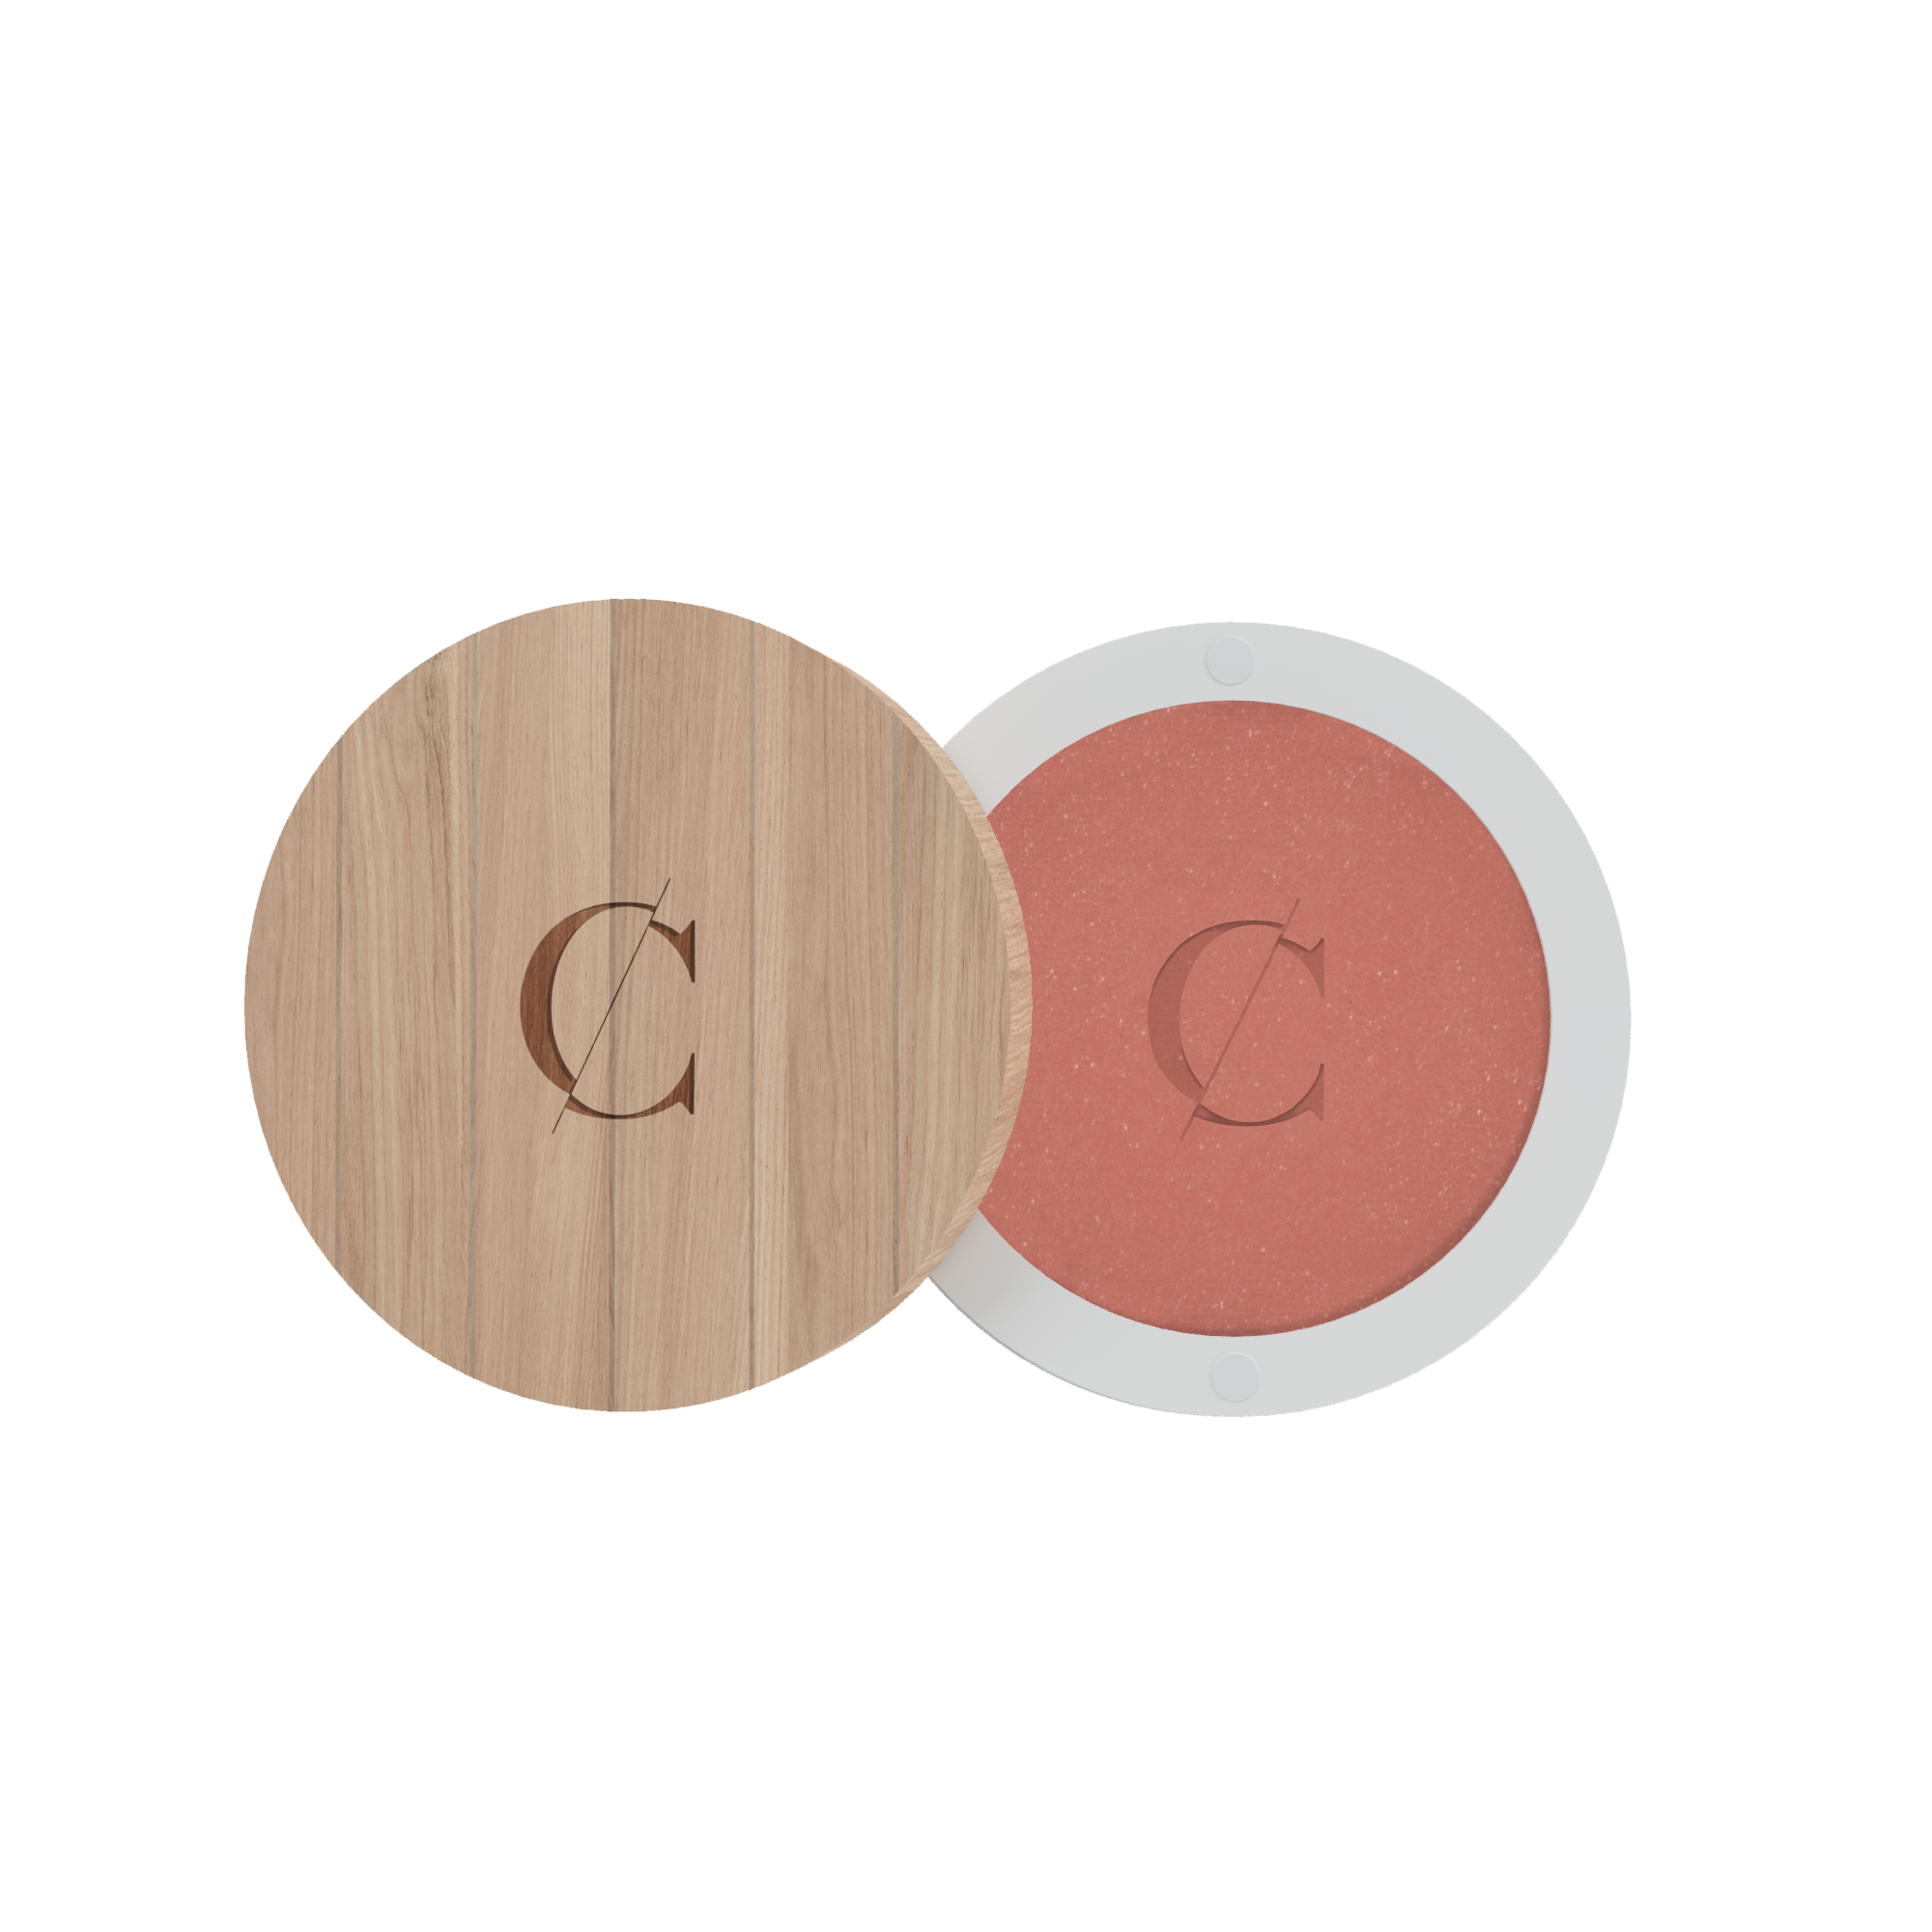 De poeders van Couleur Caramel zijn gemicroniseerd, waardoor je heel weinig van het product nodig hebt voor een goede dekking. 